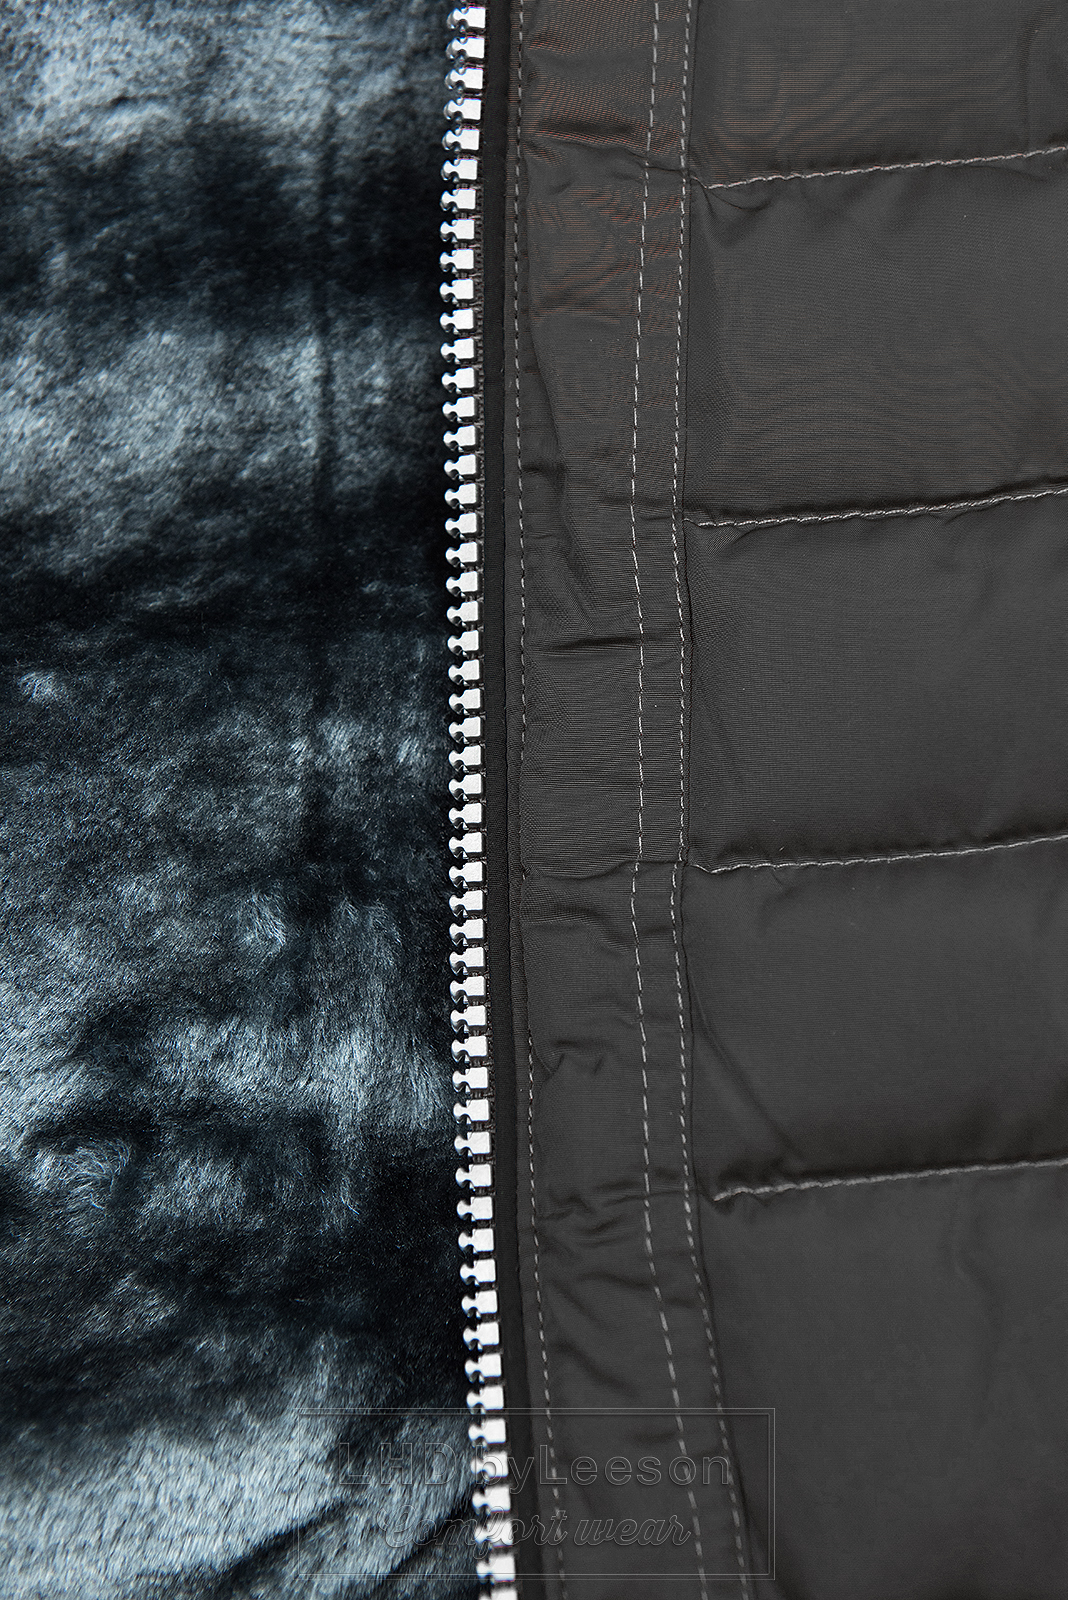 Zimowa pikowana kurtka z kapturem czarna